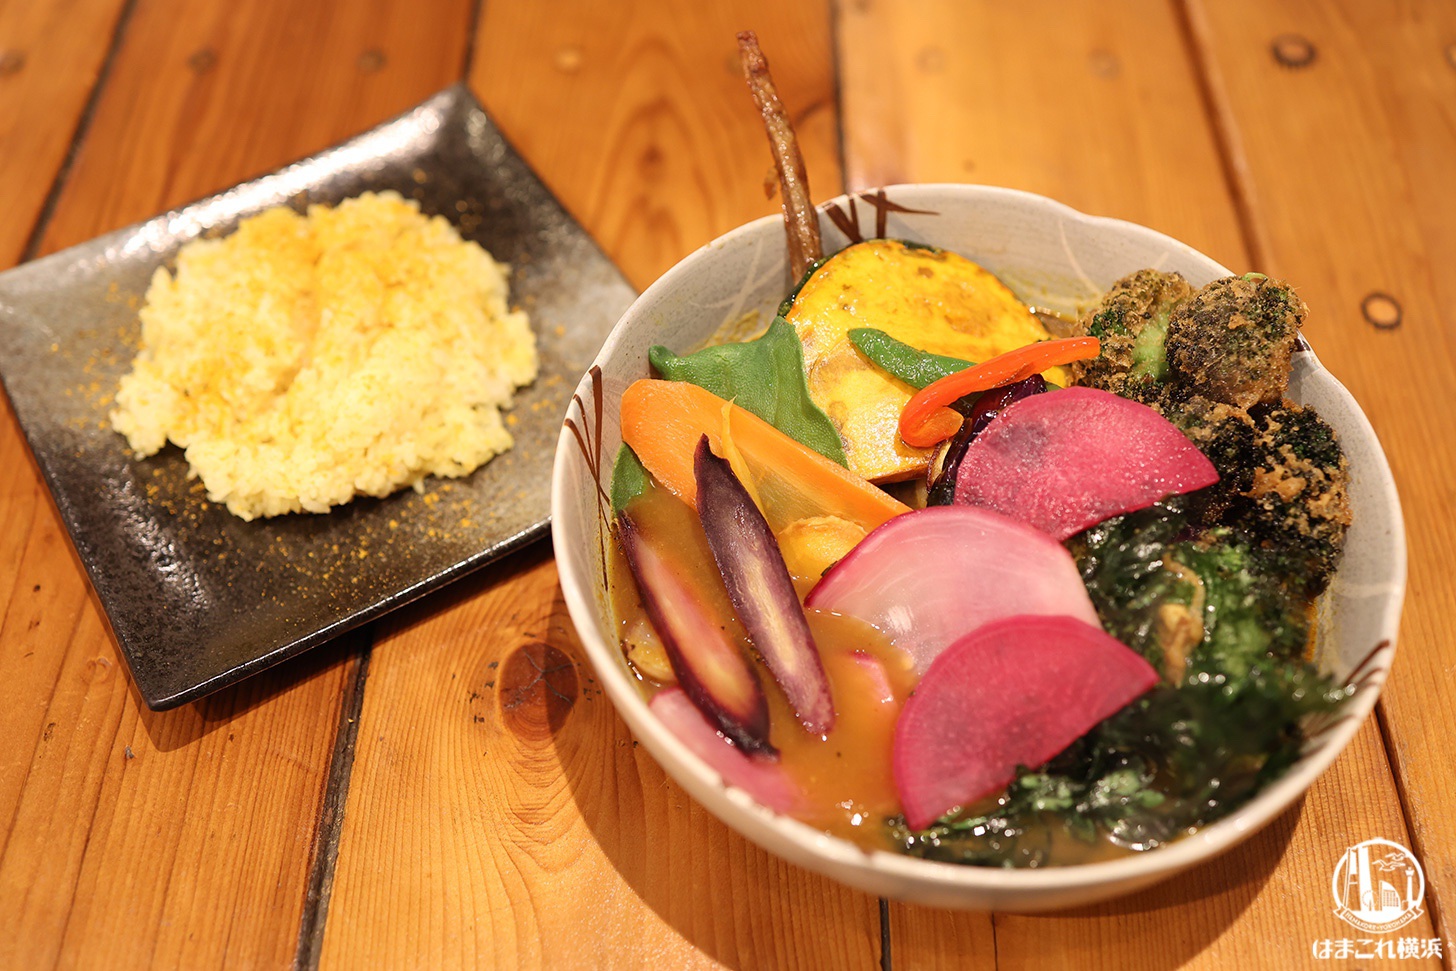 チキンと鎌倉野菜16品野菜のスープカレー